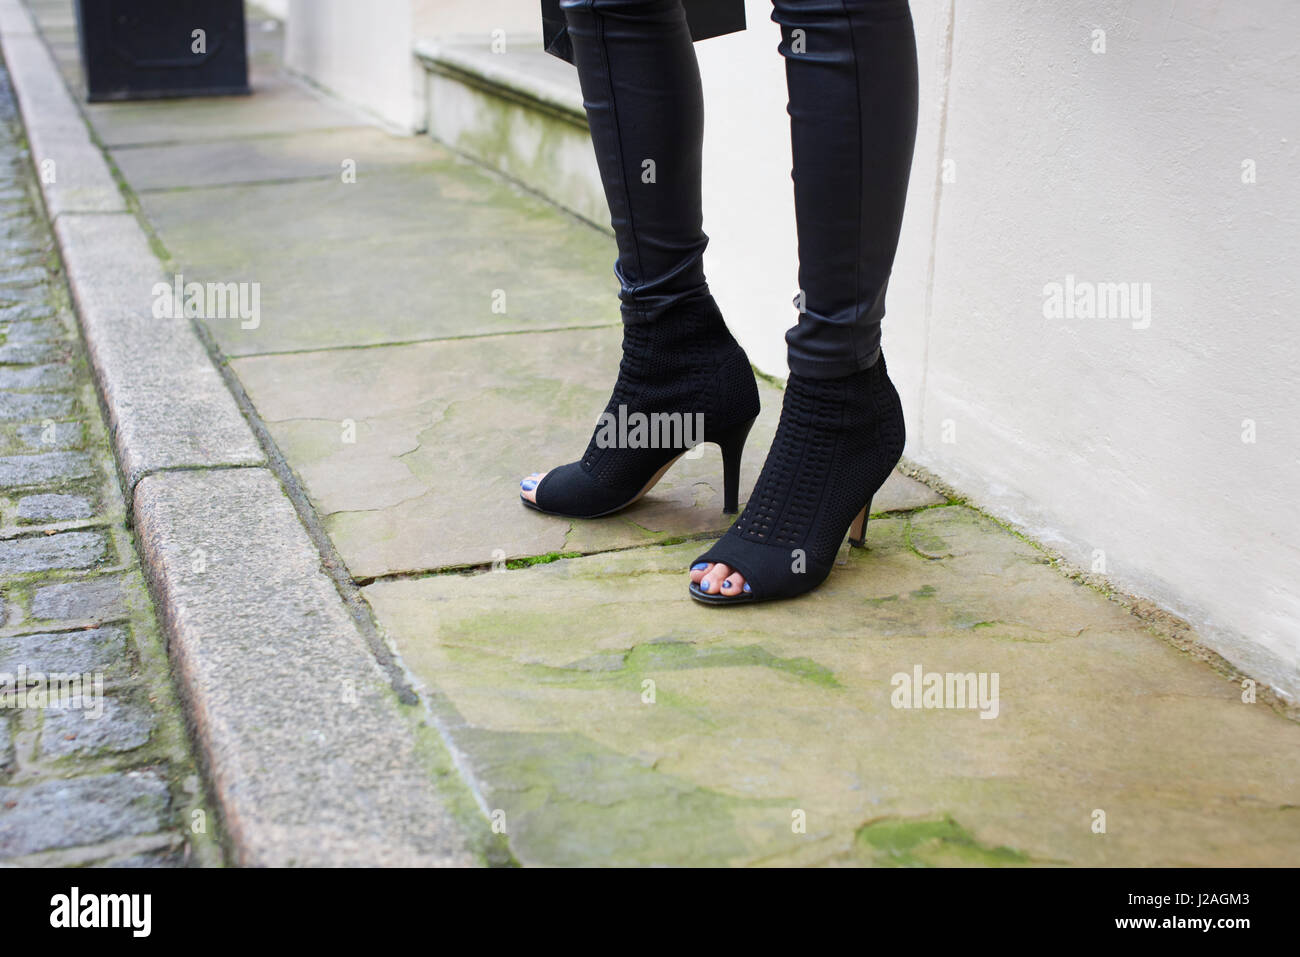 Londres - Febrero, 2017: Bajo la sección de Mujer de pie en una calle vistiendo open toe Stiletto talón botines de gamuza negra y pantalón negro apretado durante la Semana de la Moda de Londres, horizontal Foto de stock